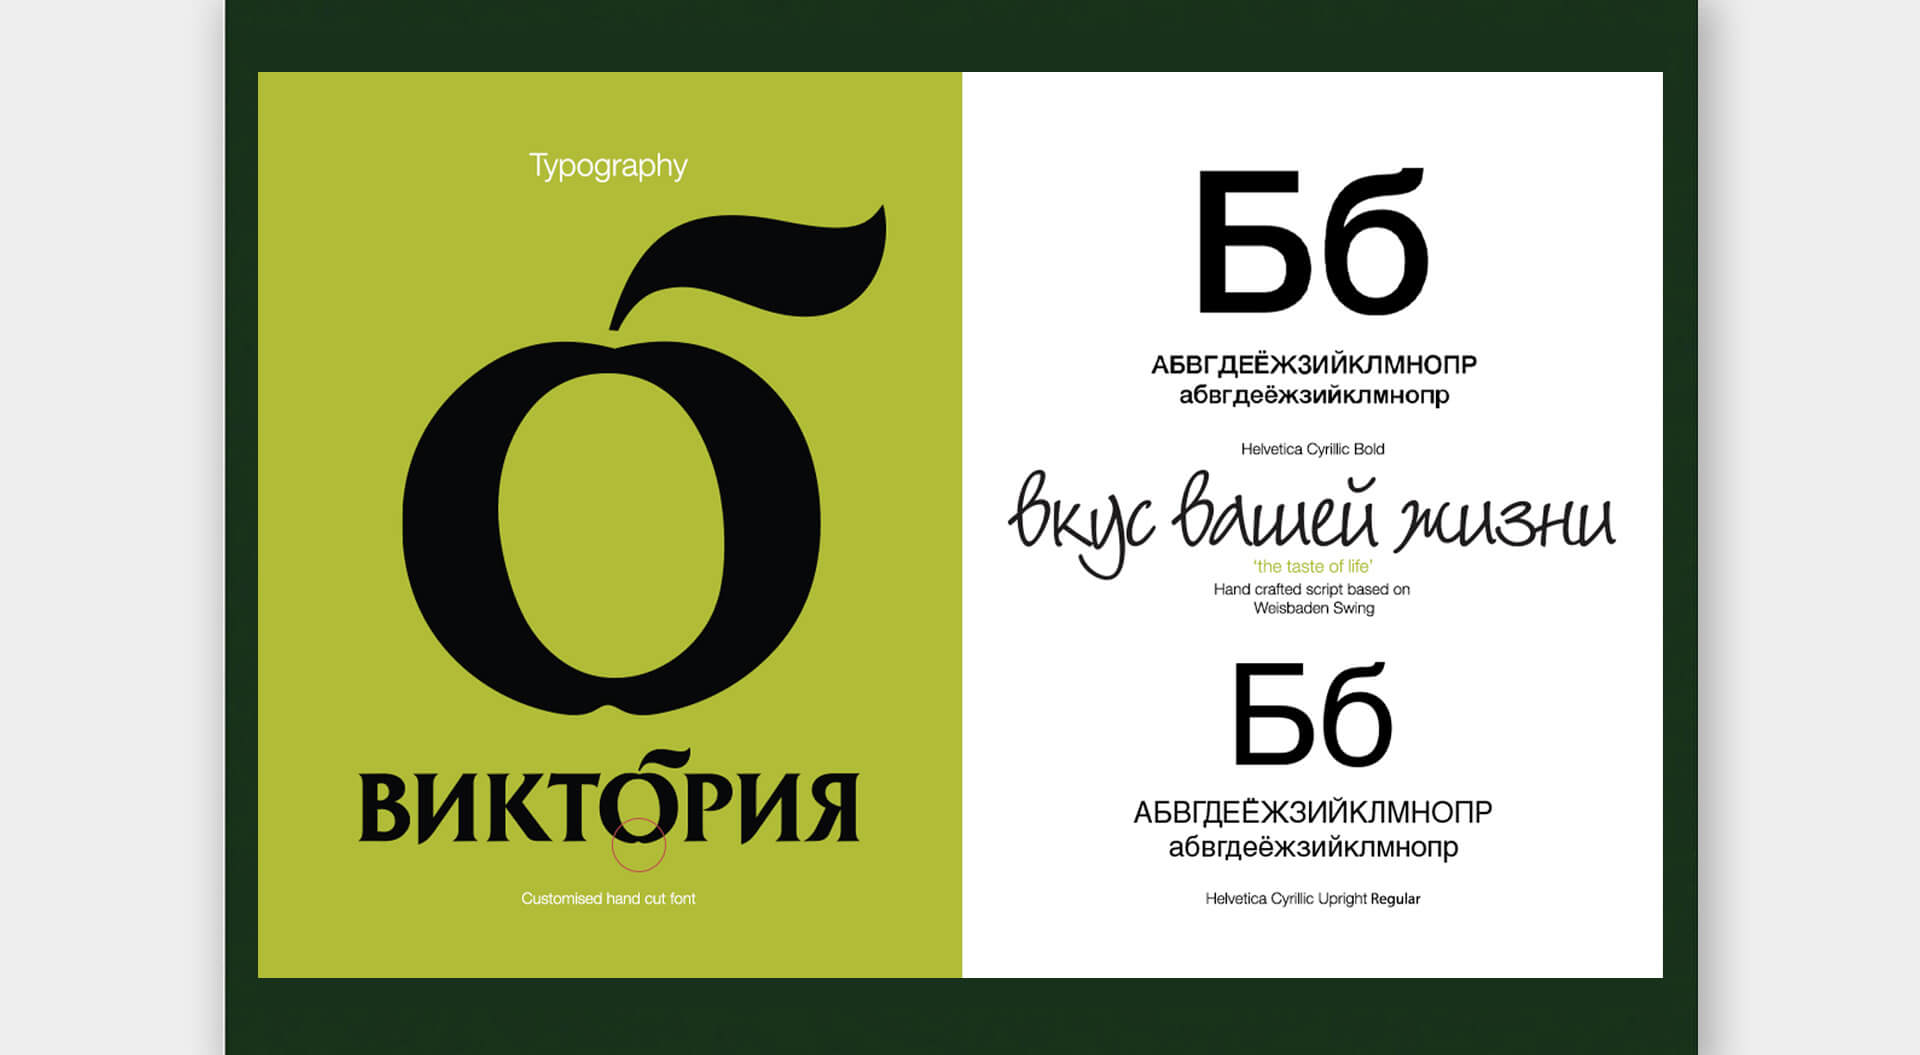 Victoria supermarkets Russia brand manual design